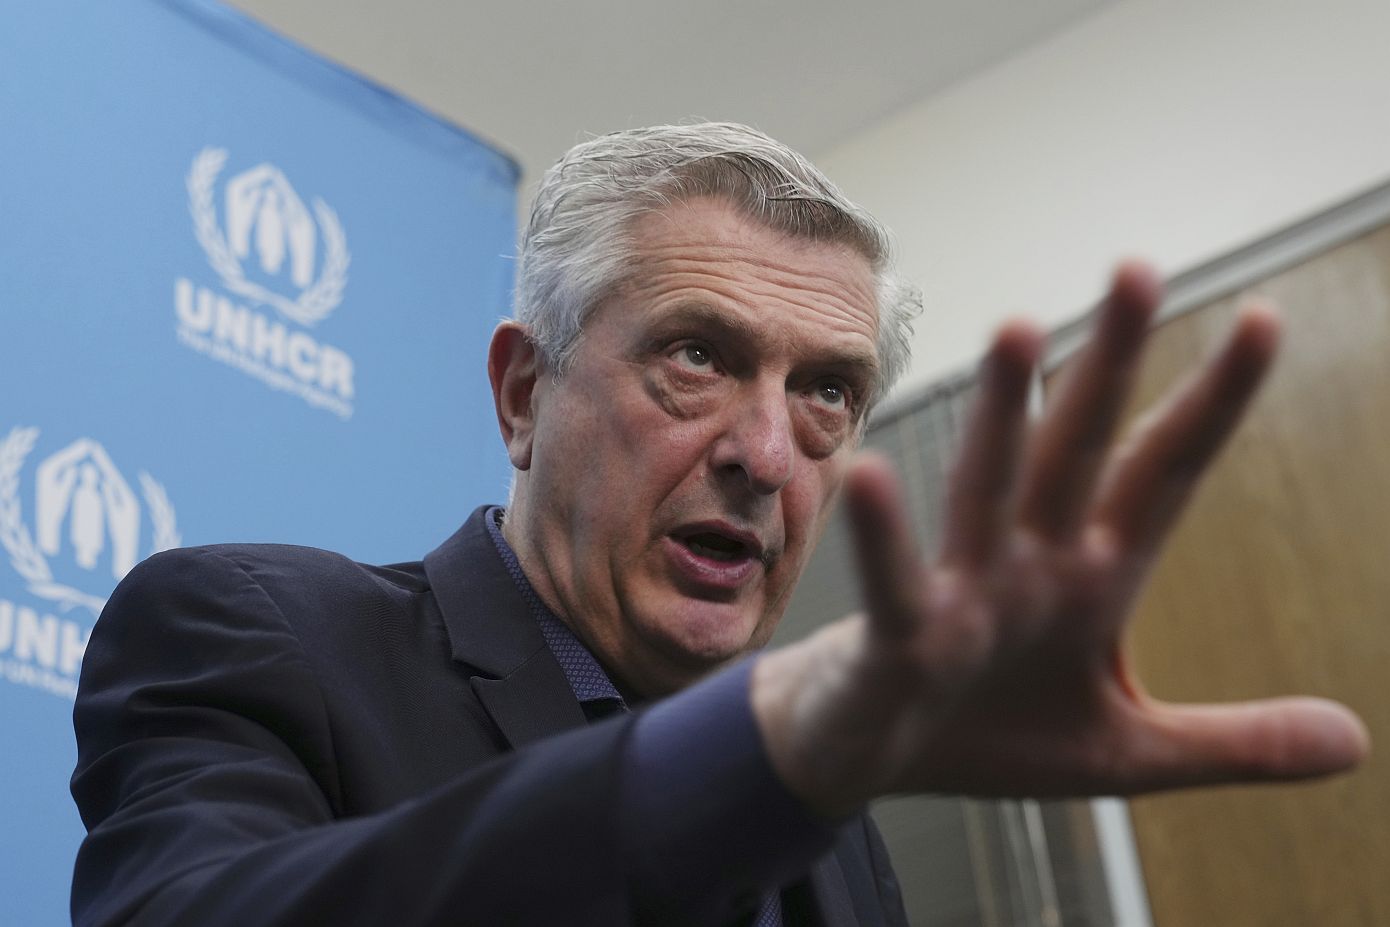 Η Ύπατη Αρμοστεία του ΟΗΕ για τους πρόσφυγες καταγγέλλει τους πολιτικούς που «εργαλειοποιούν» το μεταναστευτικό